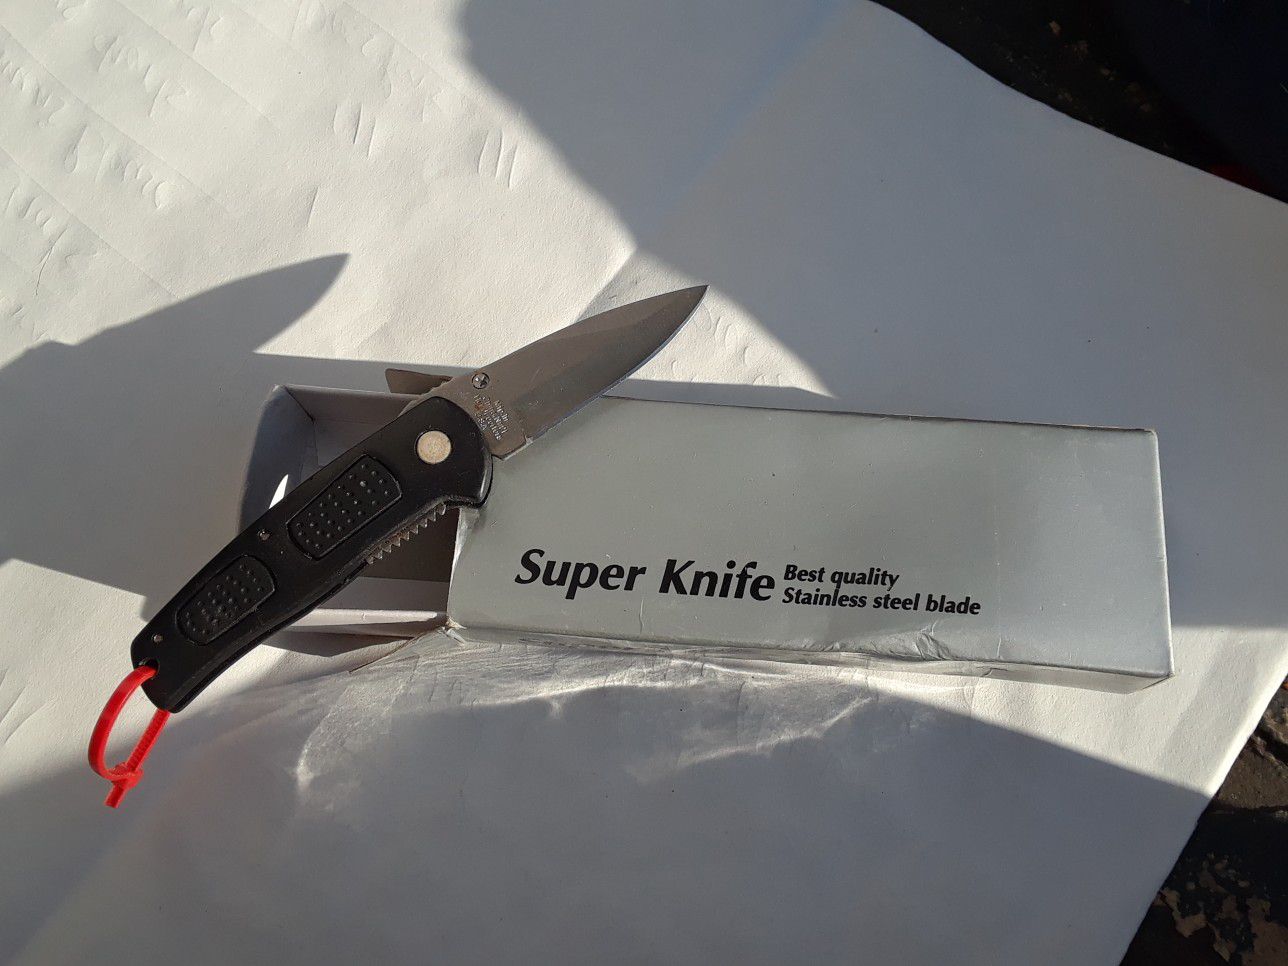 Super knife